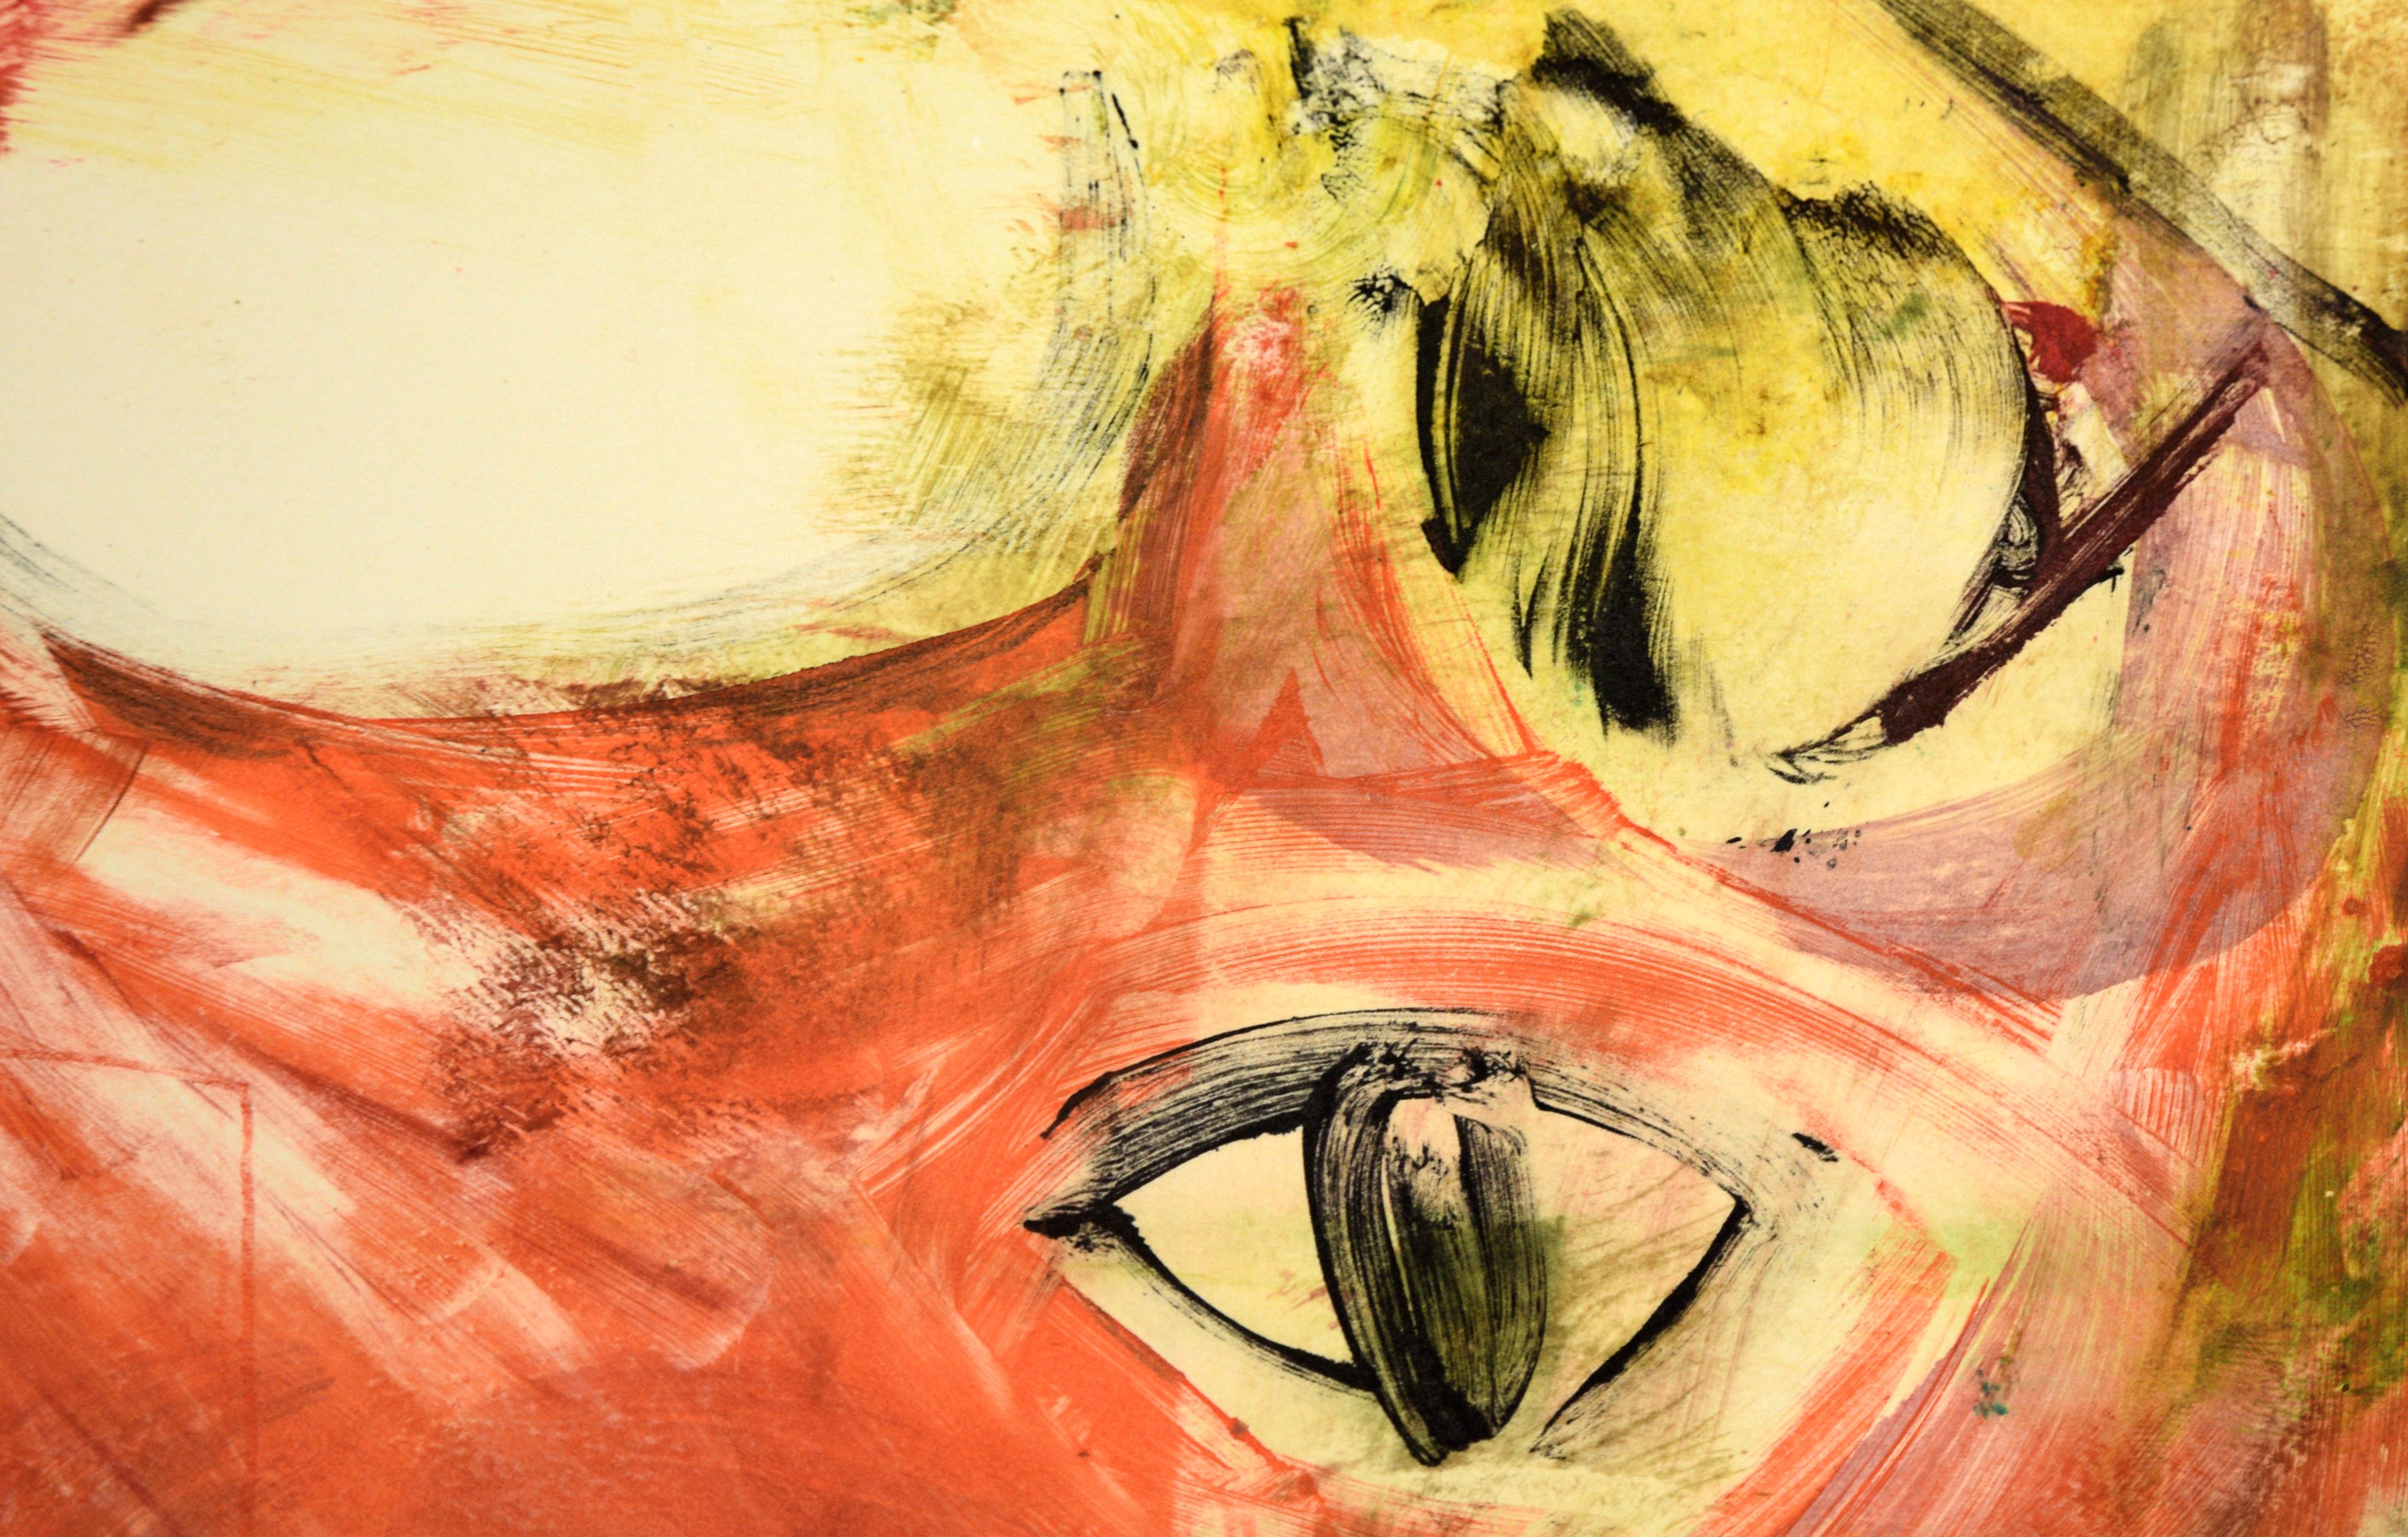 Buntes Katzengesicht – Transfer-Monogramm in Wasserfarbe auf Papier

Original-Transfer-Monotypie der kalifornischen Künstlerin Heather Speck (Amerikanerin, 20. Jh.). Kräftig farbige Nahaufnahme eines Katzengesichts. Die Katze ist leuchtend orange,